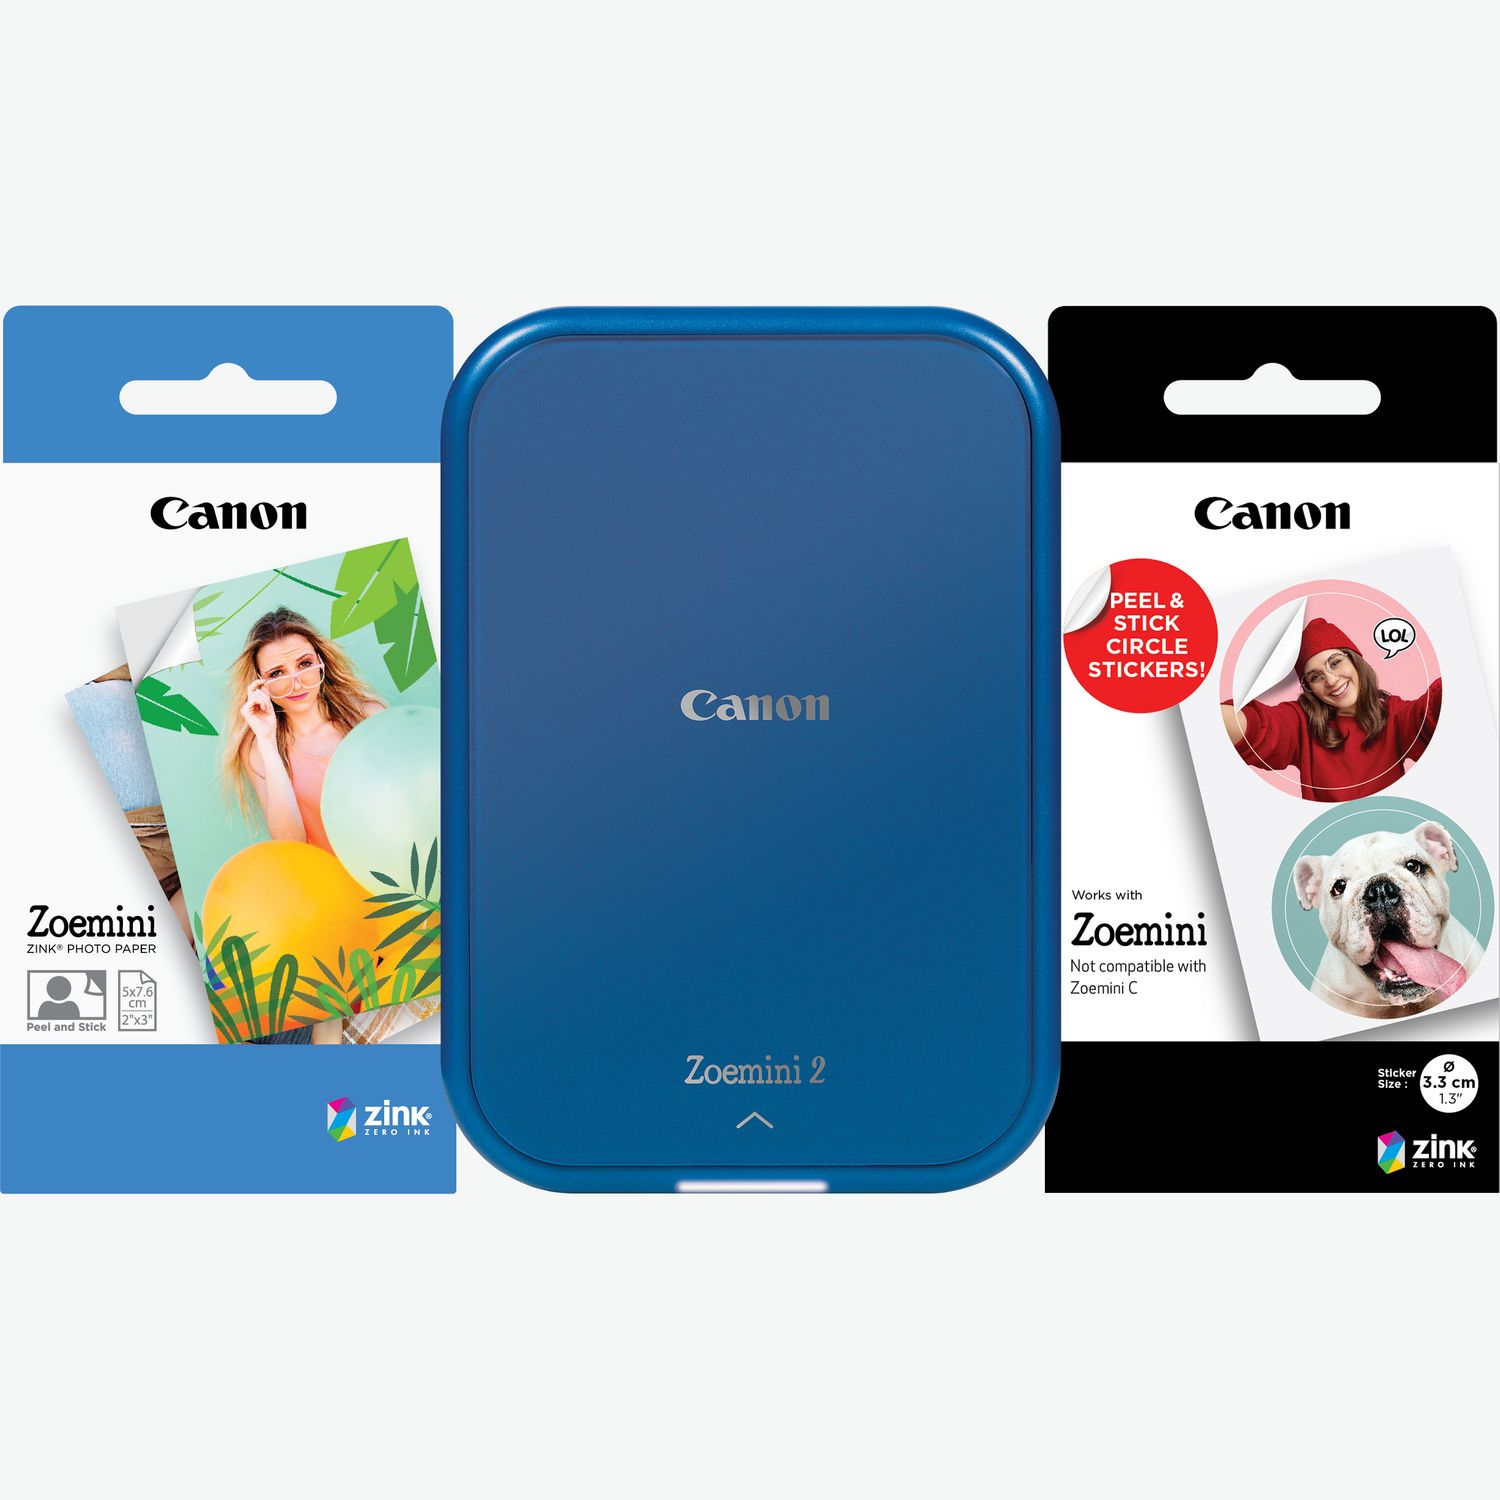 Imprimante photo couleur portable sans fil Canon SELPHY SQUARE QX10, vert  menthe dans Imprimantes portables — Boutique Canon France